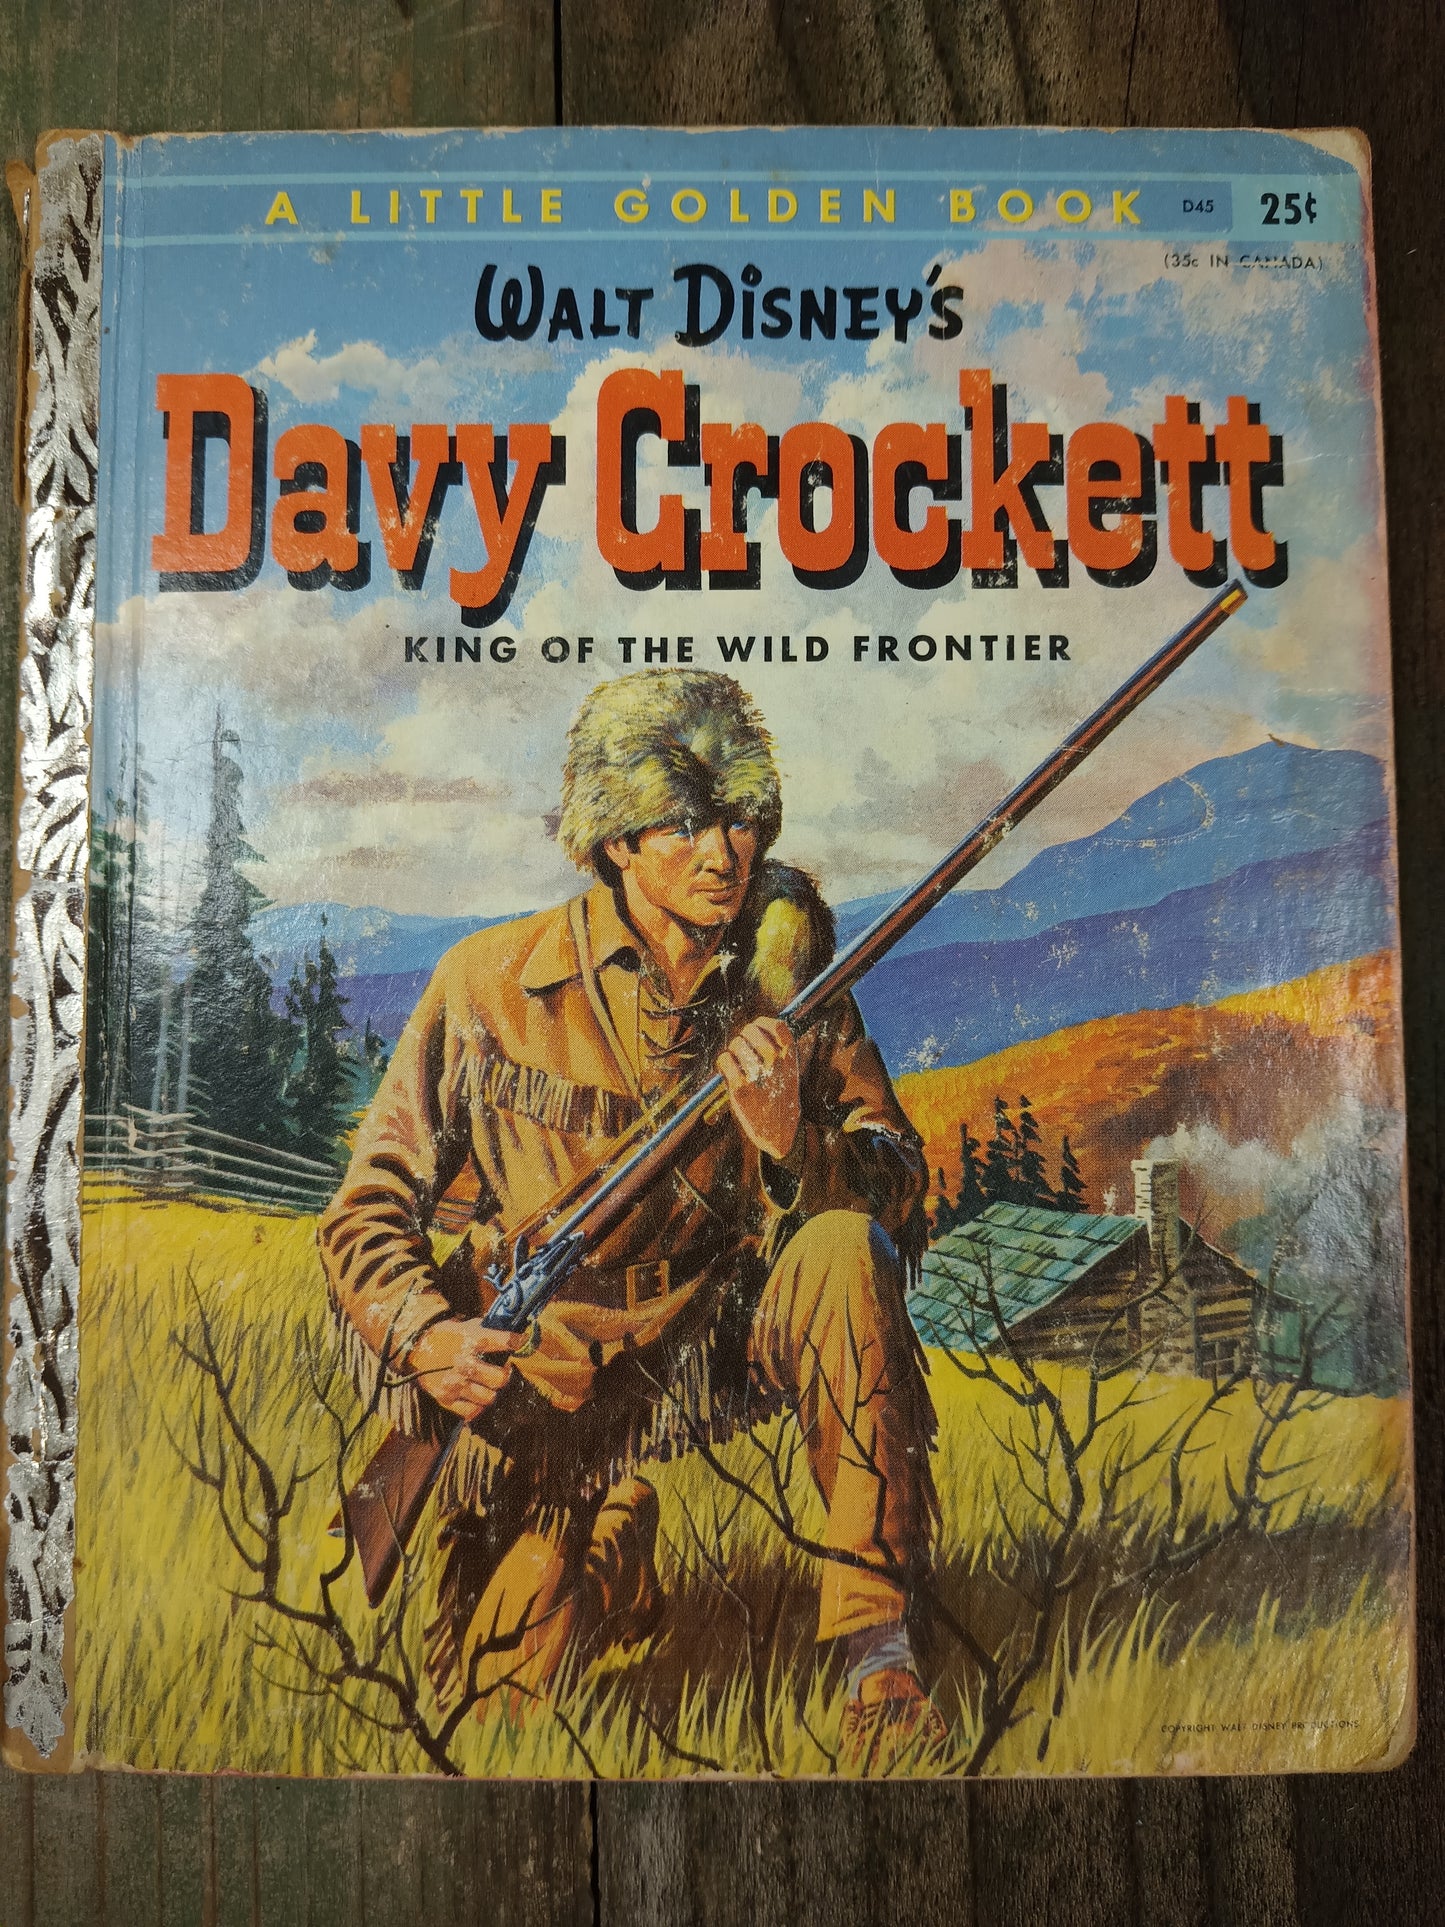 Little Golden Book of Davy Crockett